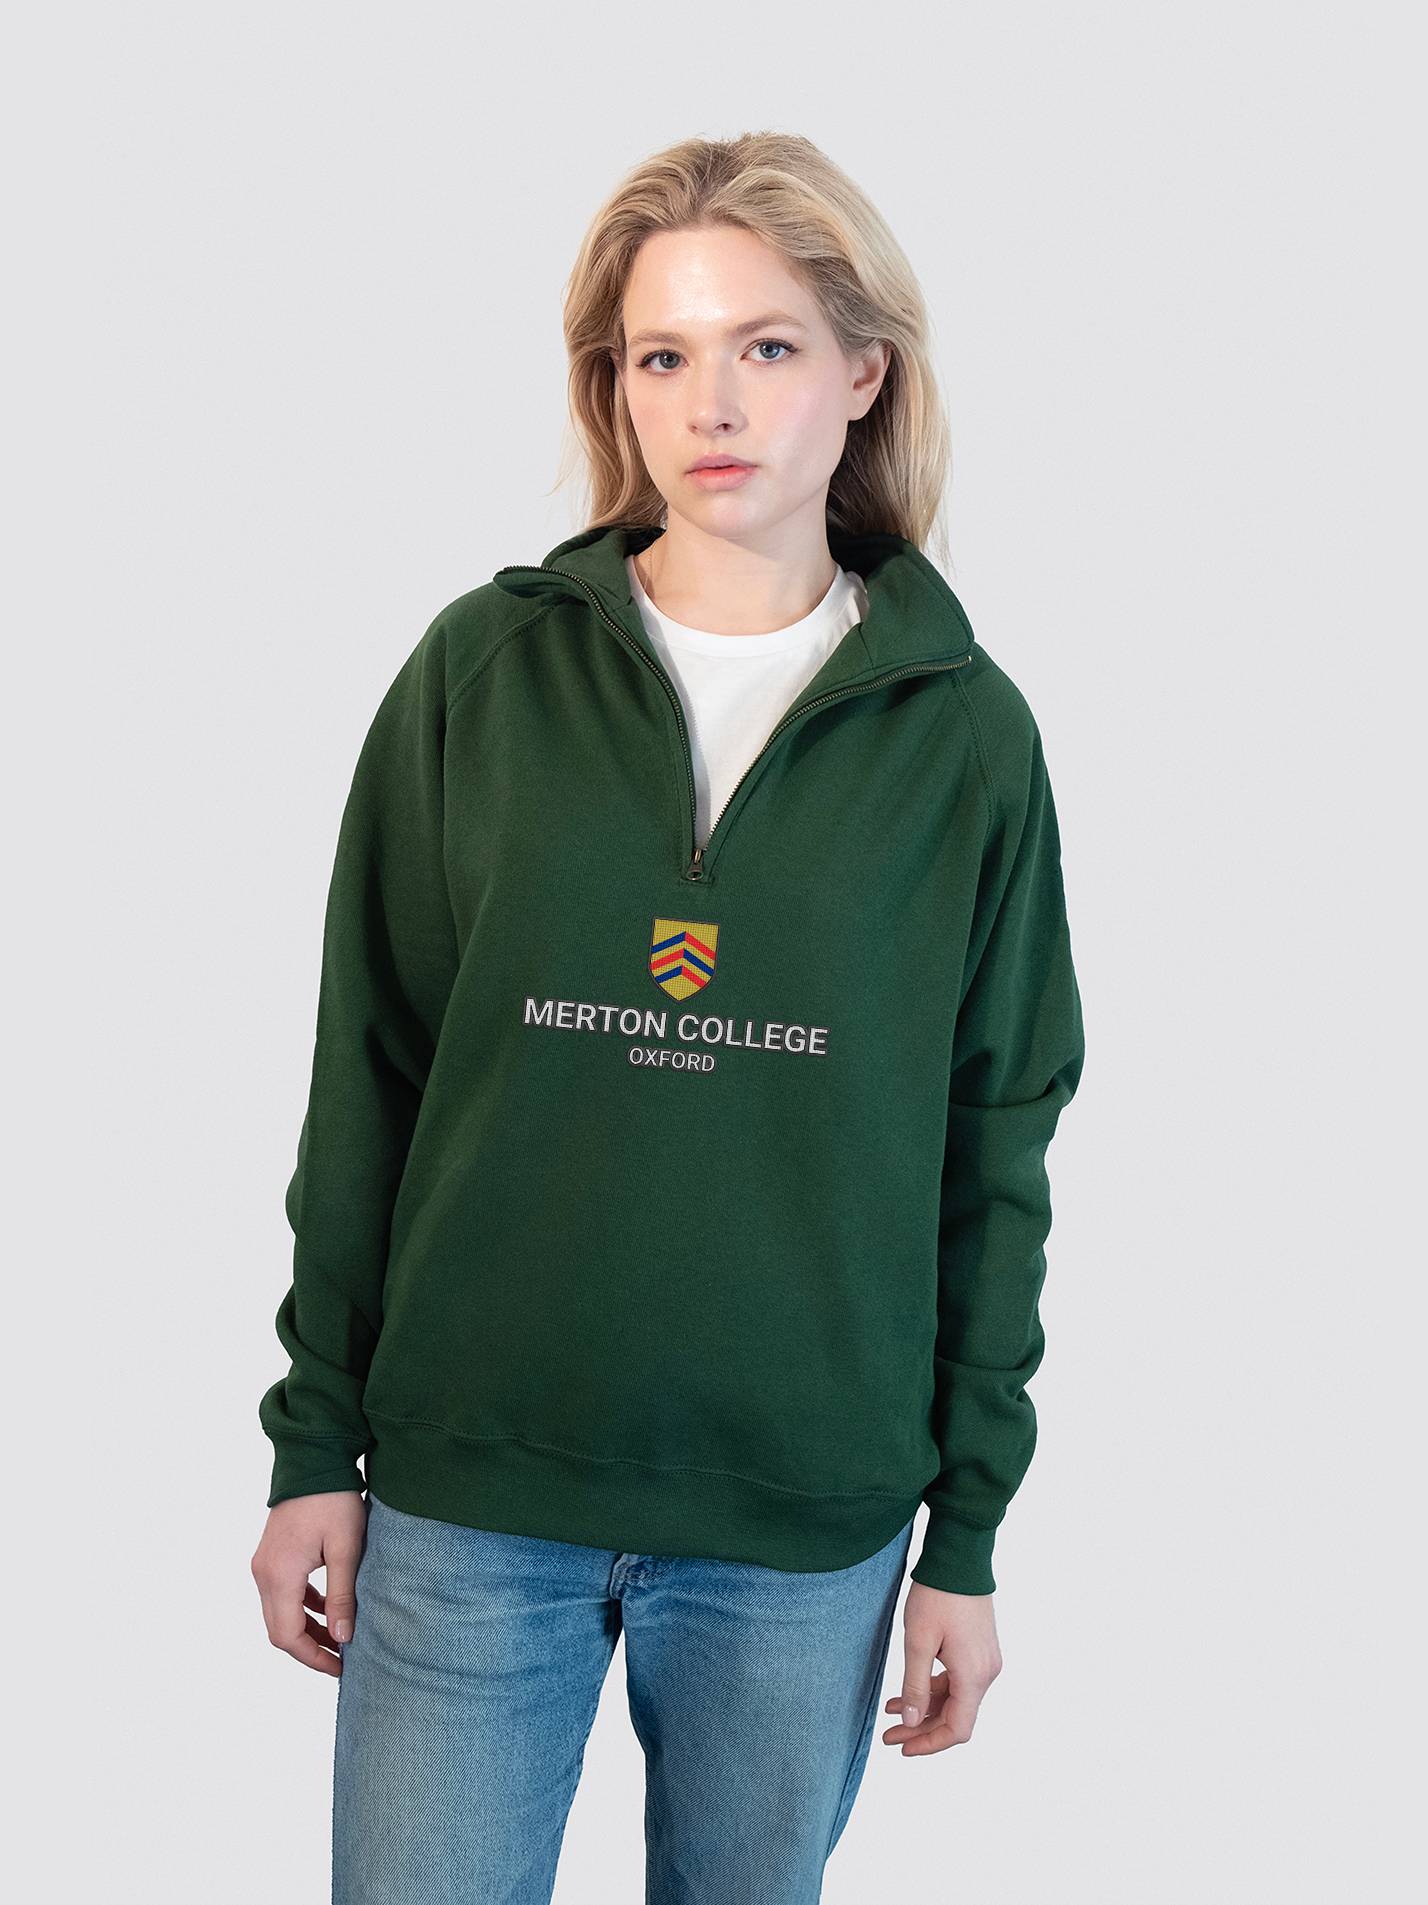 Merton College Oxford JCR Heritage Unisex 1/4 Zip Sweatshirt